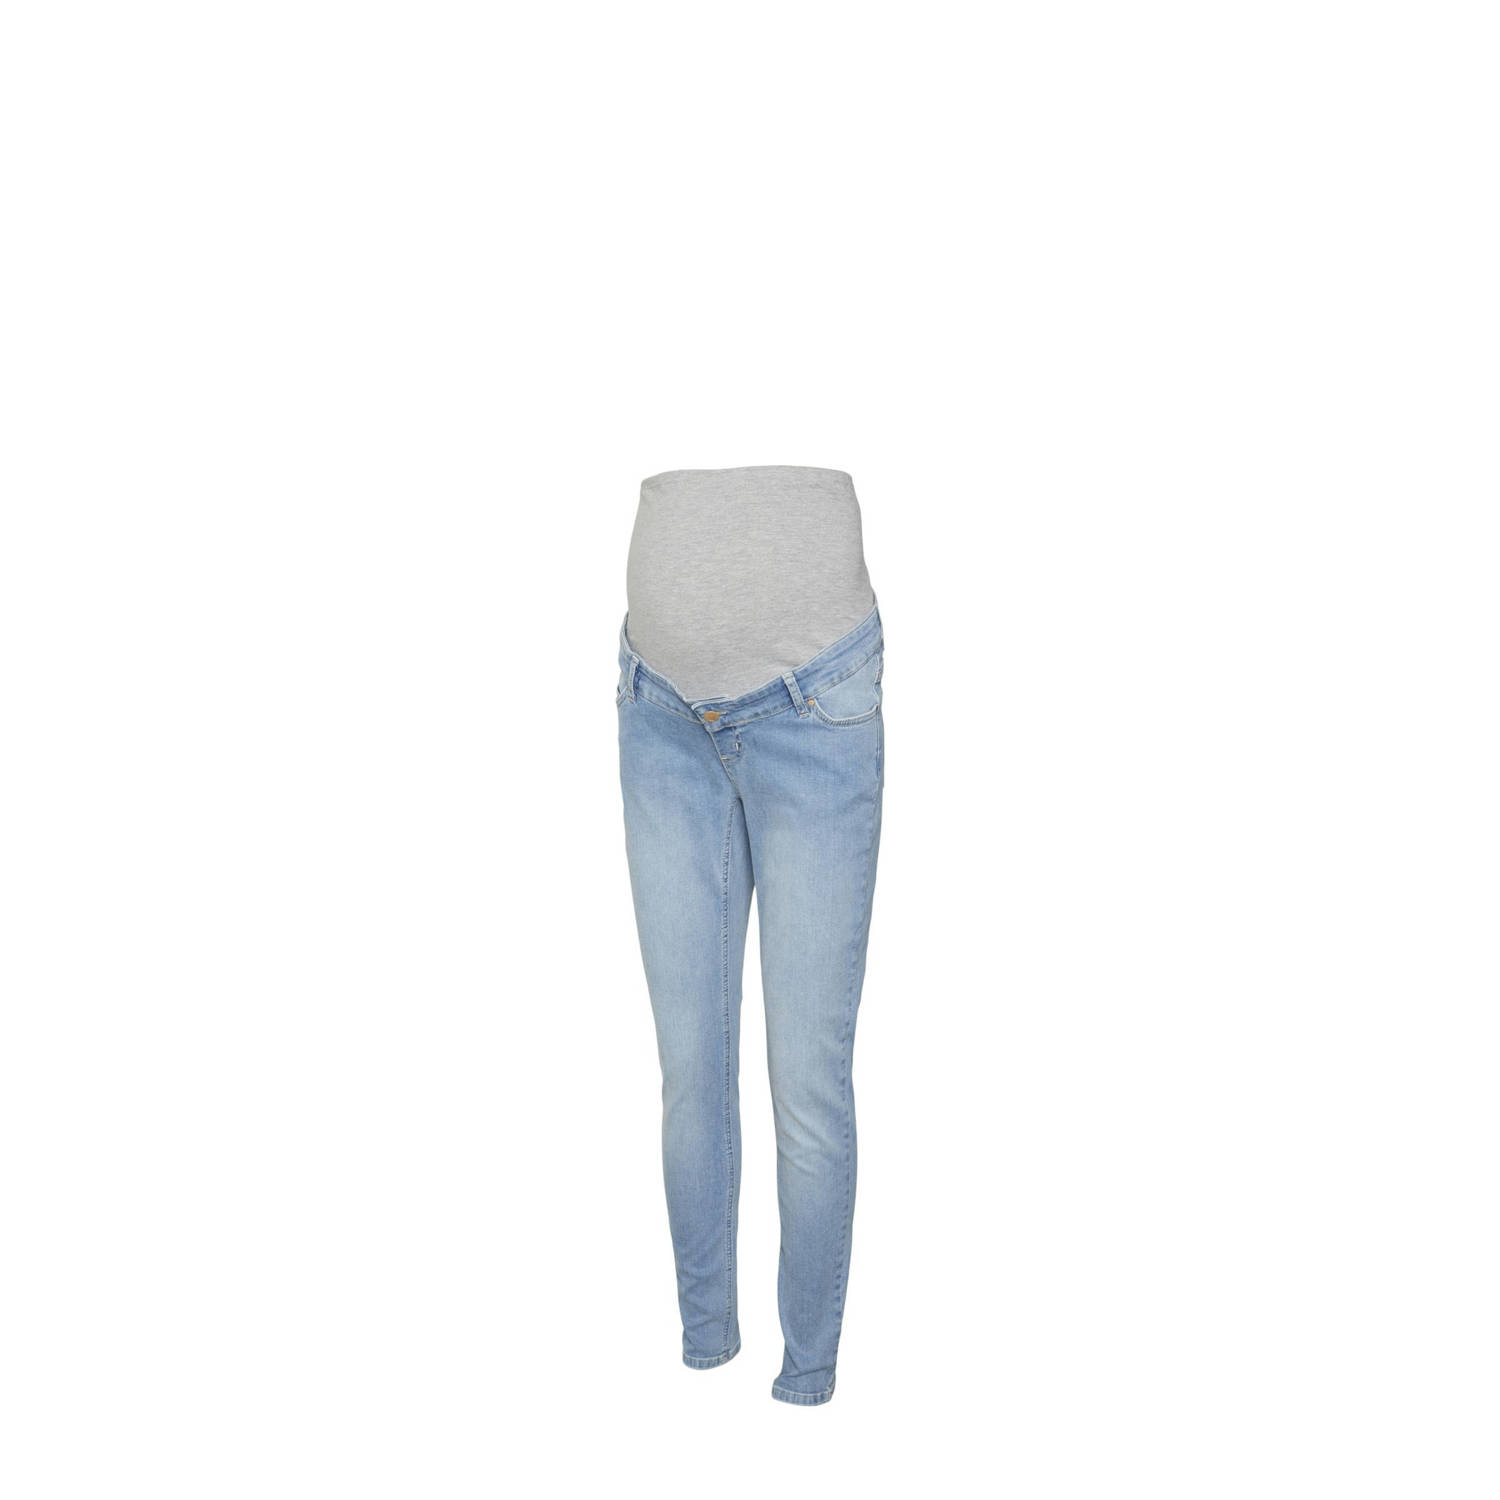 Mamalicious zwangerschaps skinny jeans MLOLIVIA light blue denim Effen 34-32 (XS)